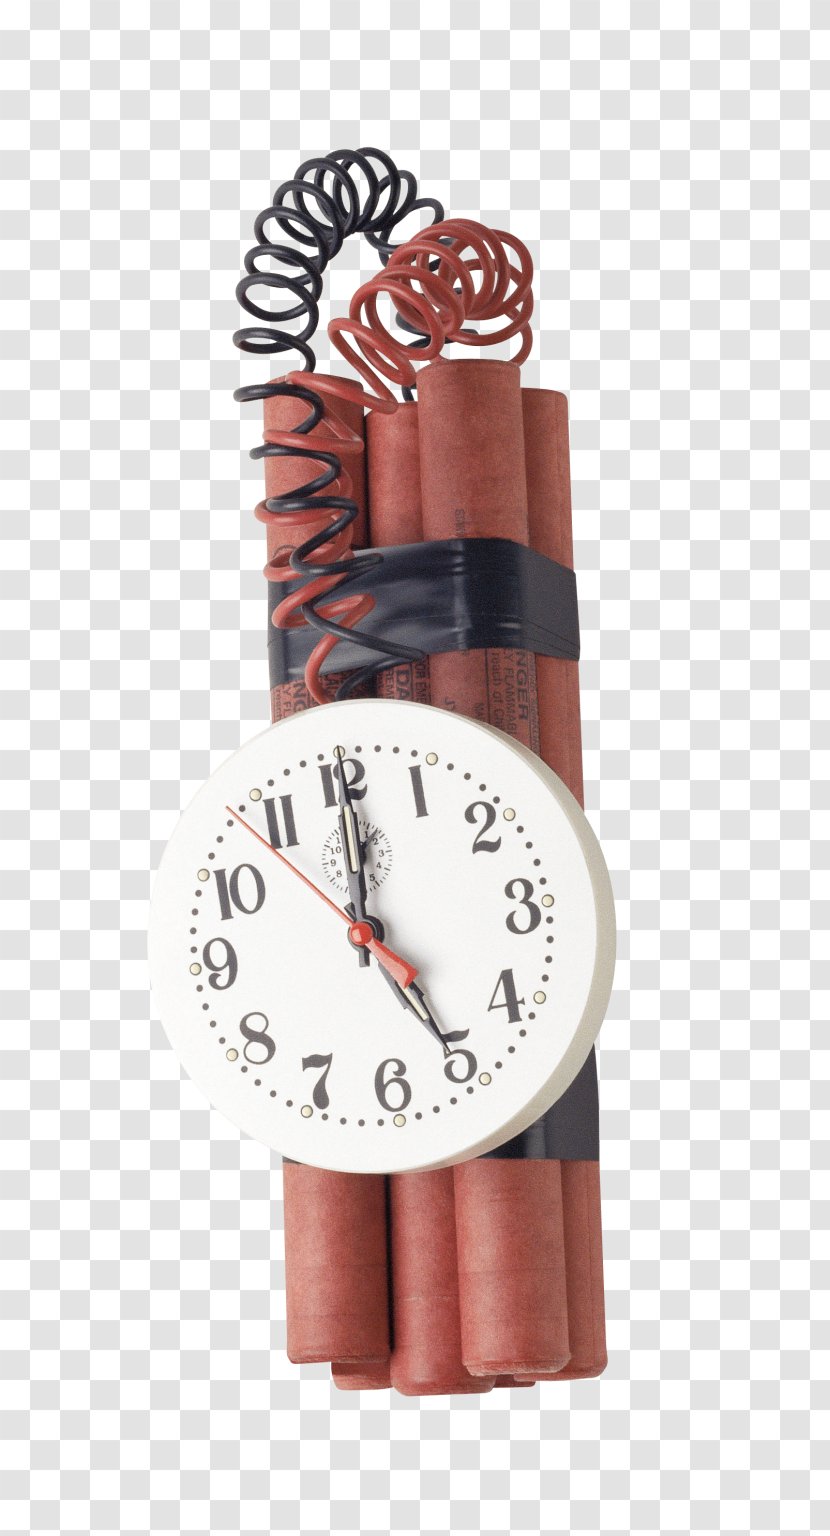 Time Bomb Detonator Explosion - Clock Transparent PNG